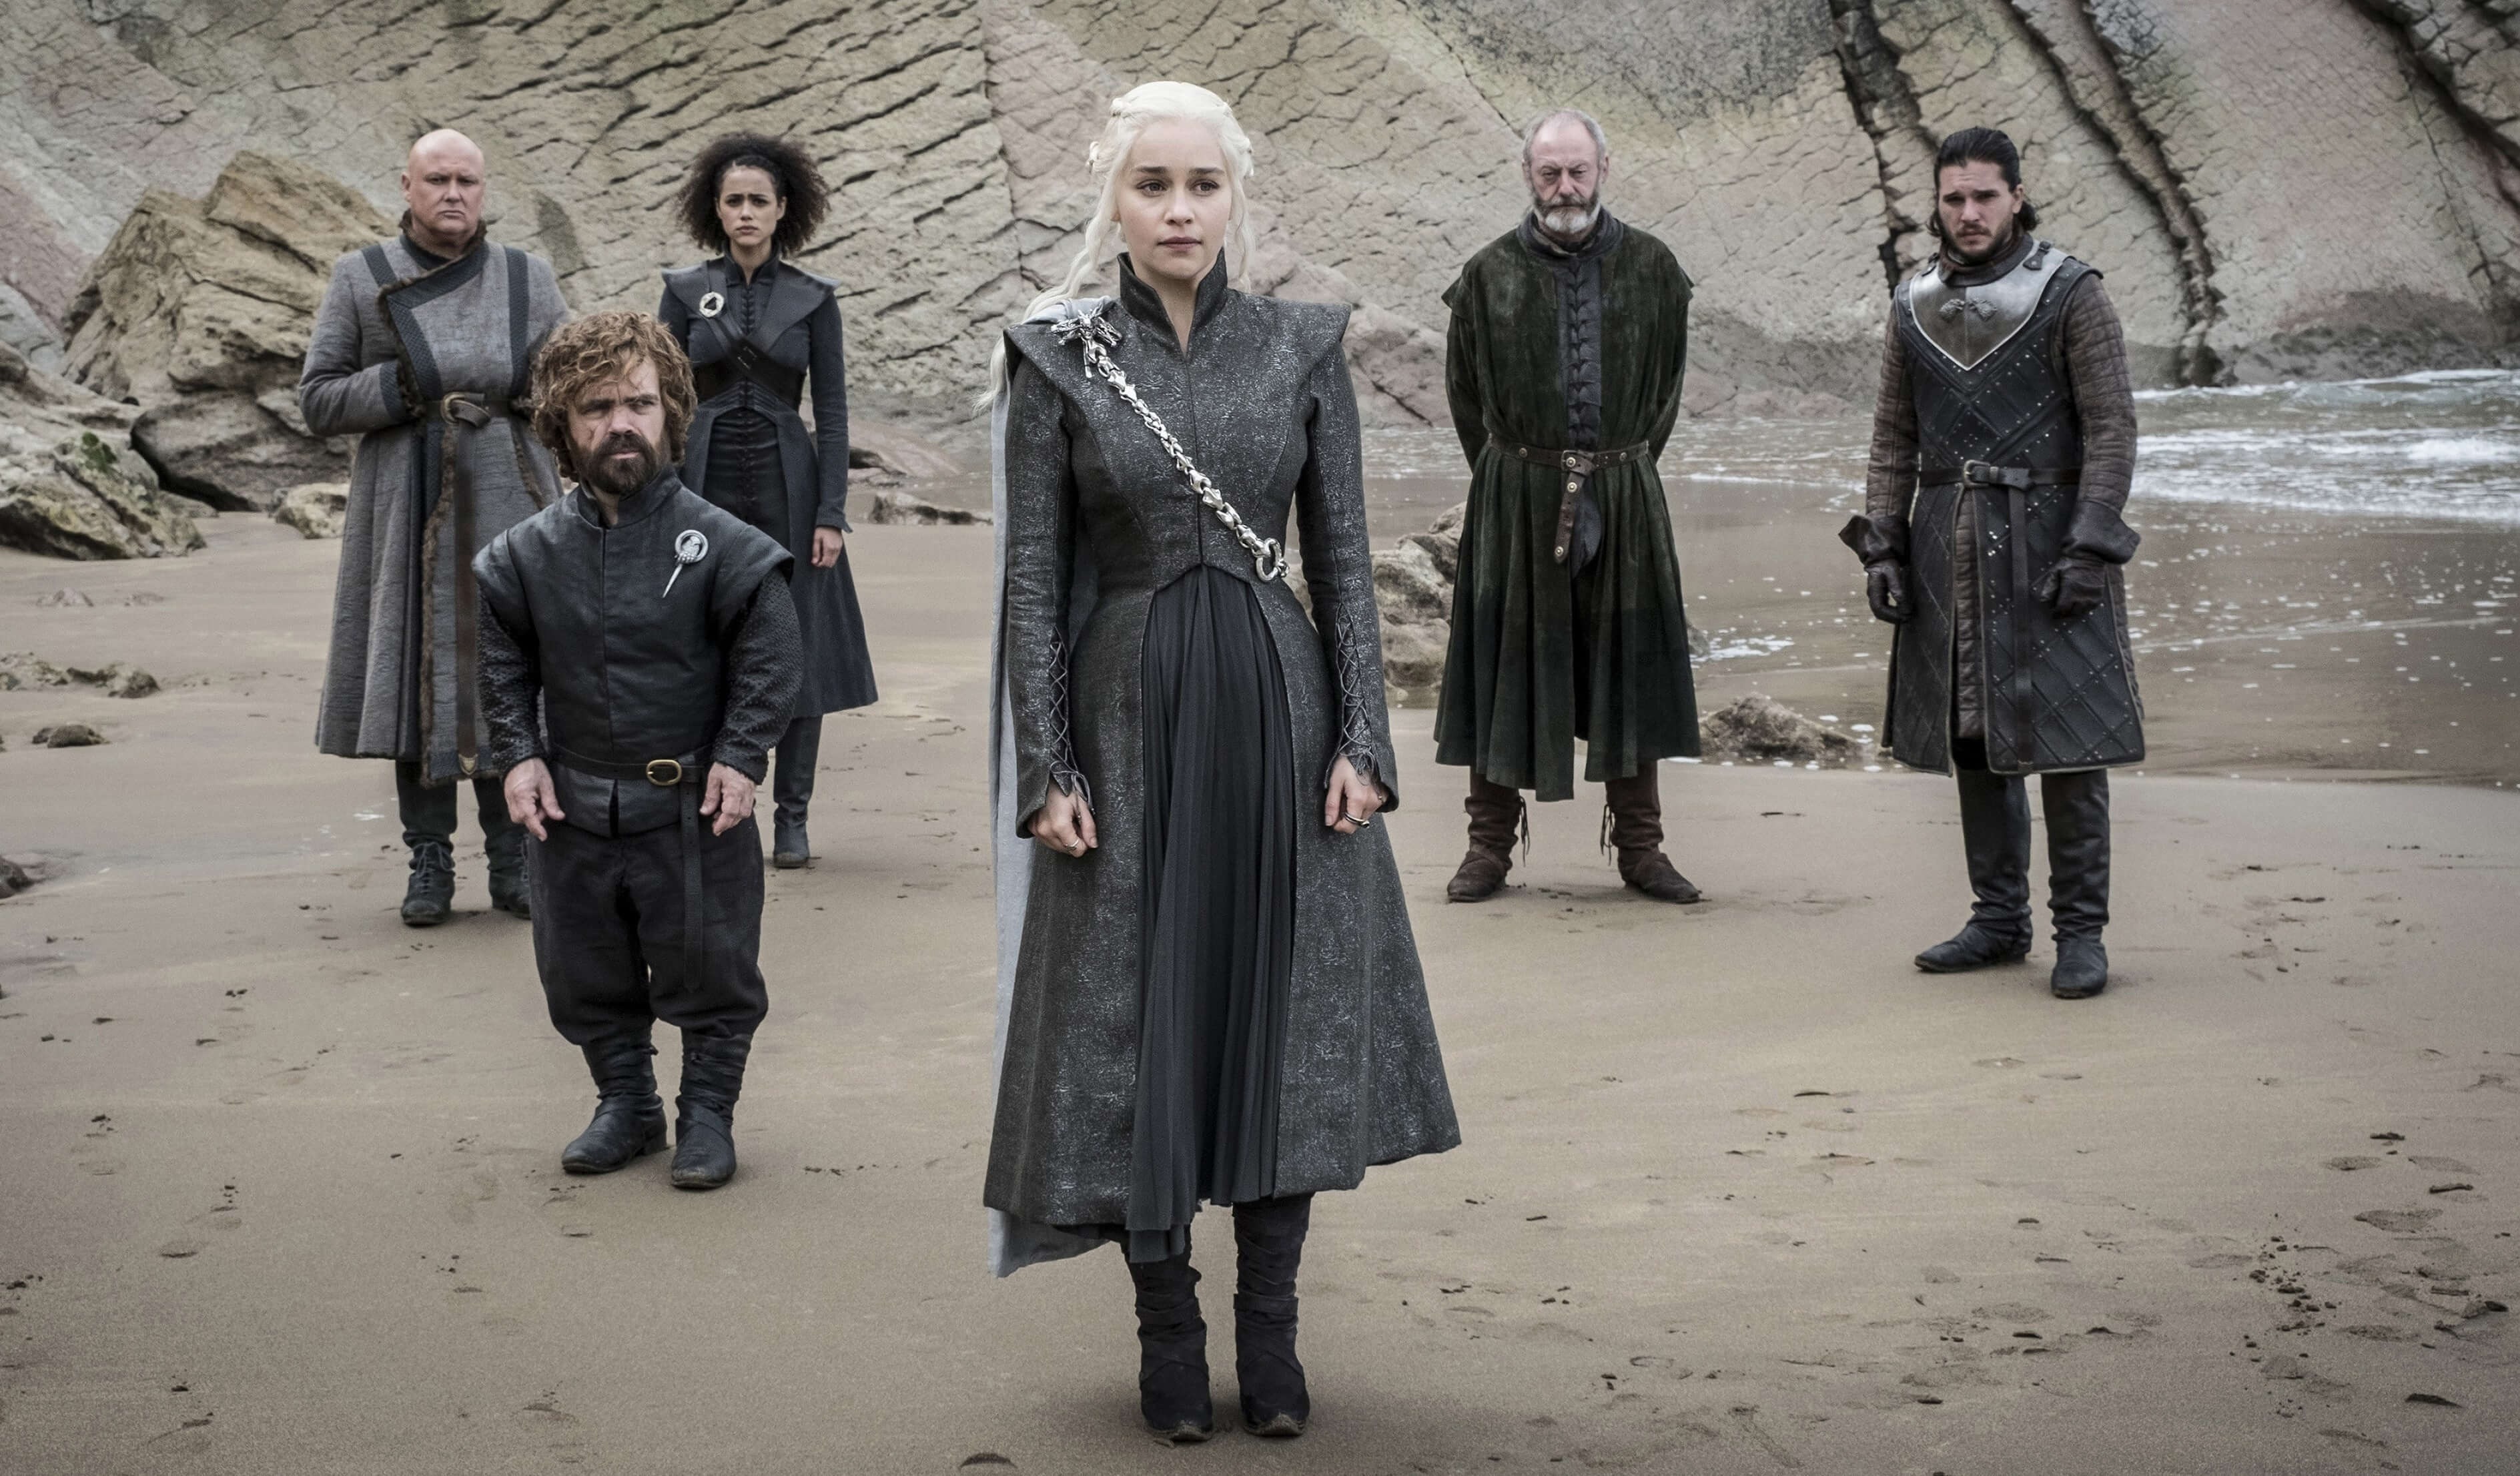 Como estão hoje os 14 atores de “Game of Thrones” / Incrível